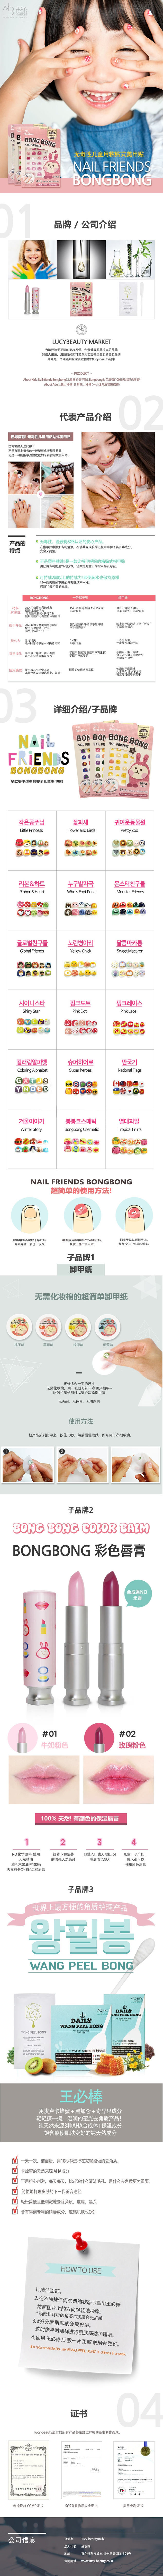 BONG BONG 韩国儿童无毒安全粘贴式美甲指甲贴纸 7岁以上的儿童使用 1pc